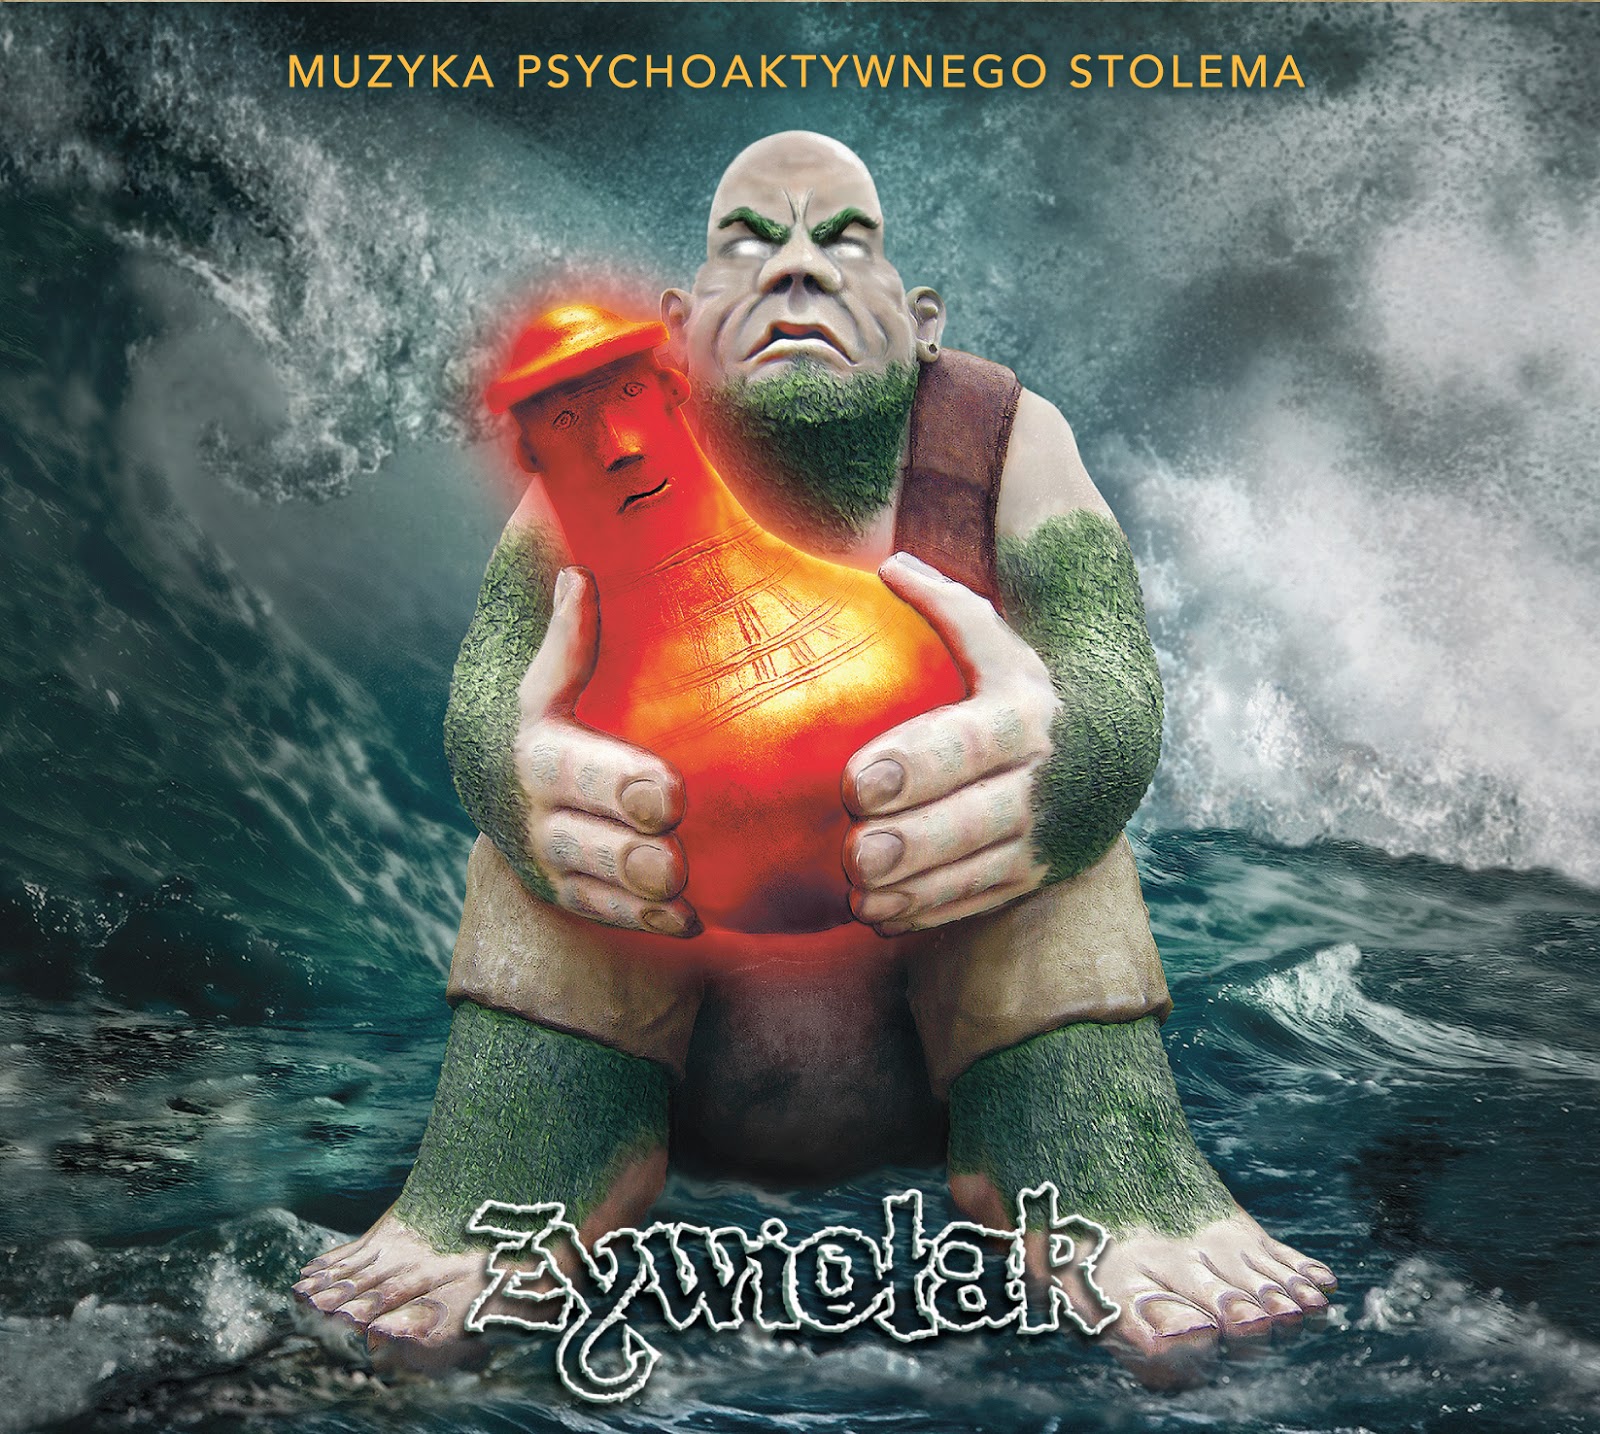 Żywiołak - Muzyka Psychoaktywnego Stolema (EP)